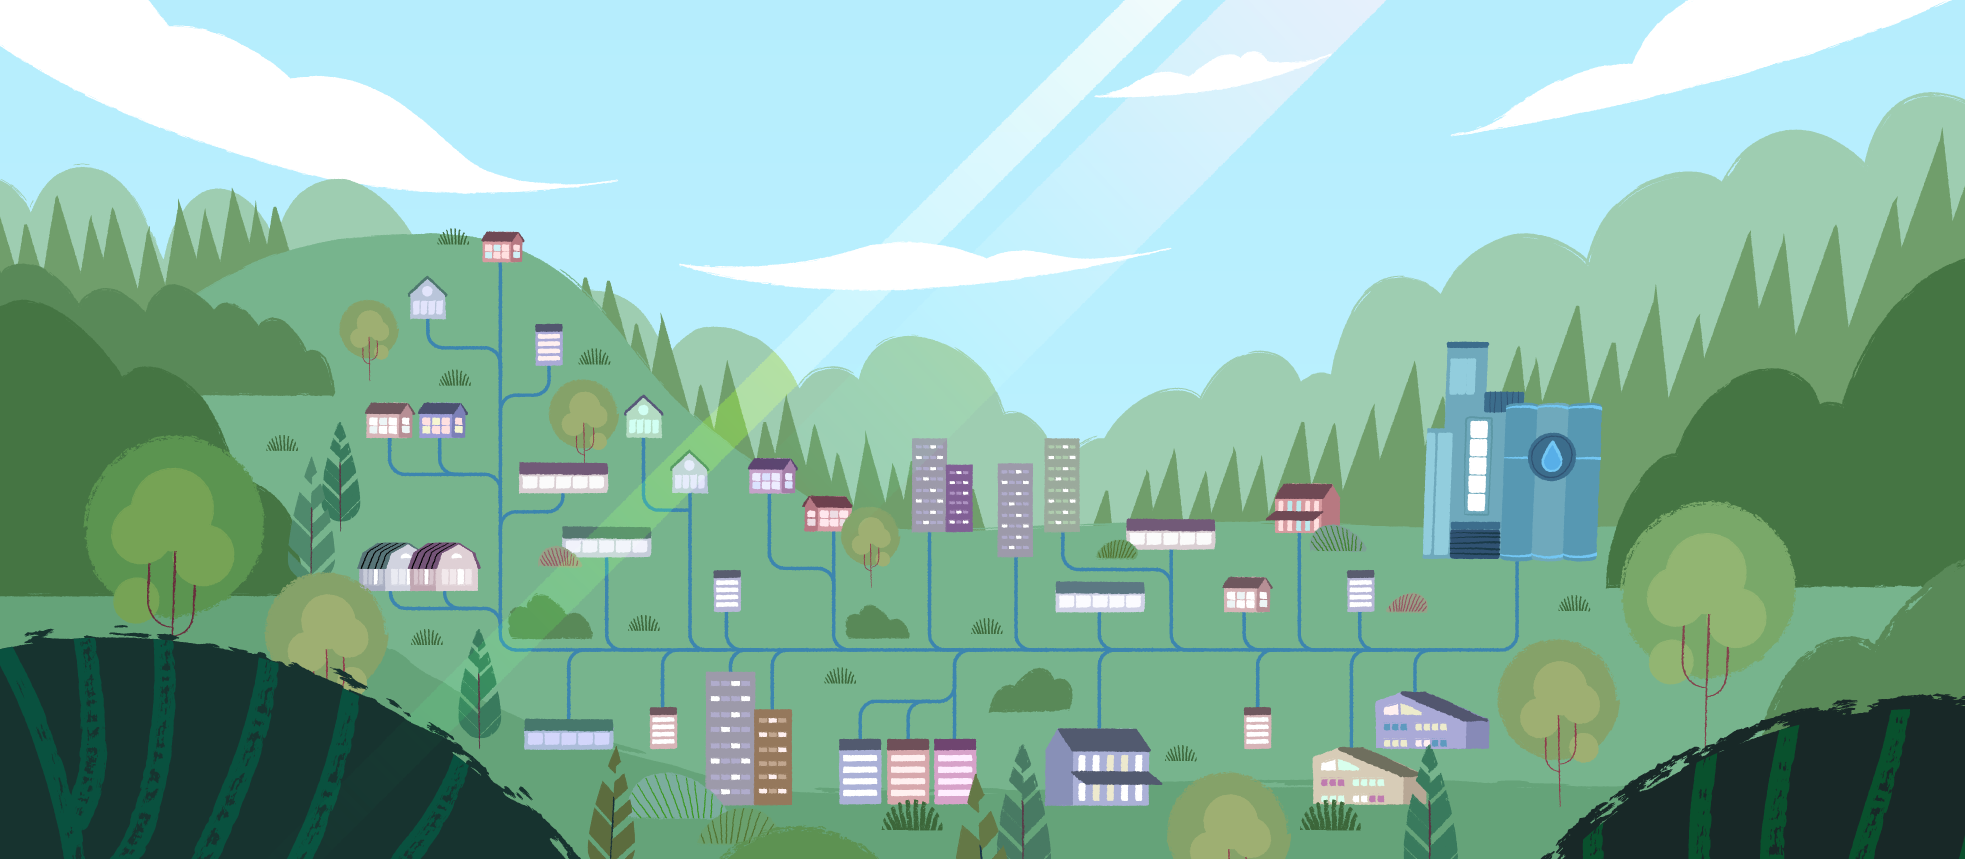 En illustration av ett grönt landskap med träd och blå himmel med moln. Det finns höga och låga hus utspridda i landskapet. Från husen går ledningar till det stora vattenverket.